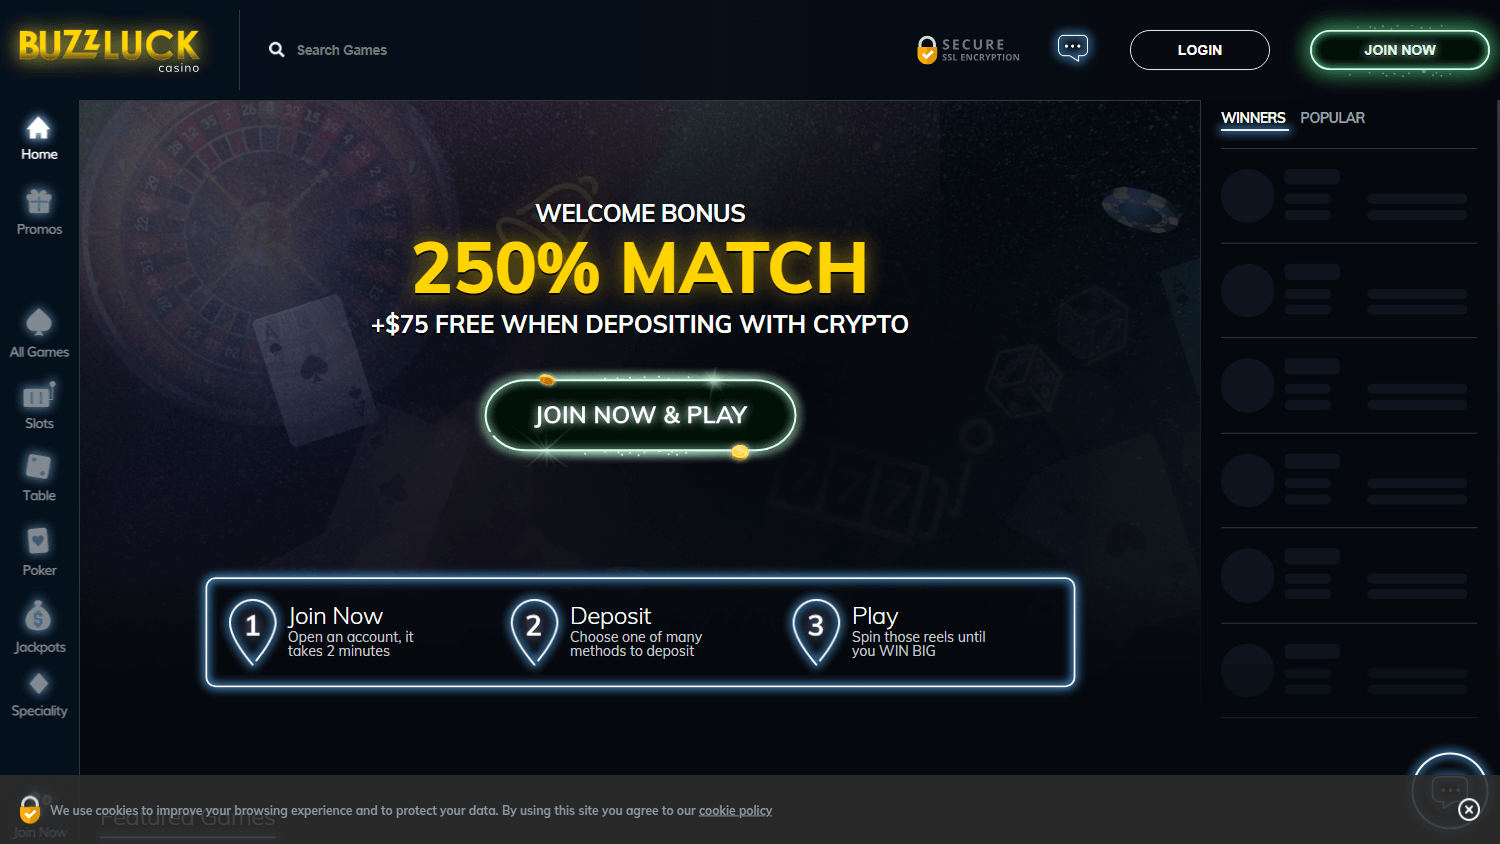 buzzluck_casino_homepage_desktop